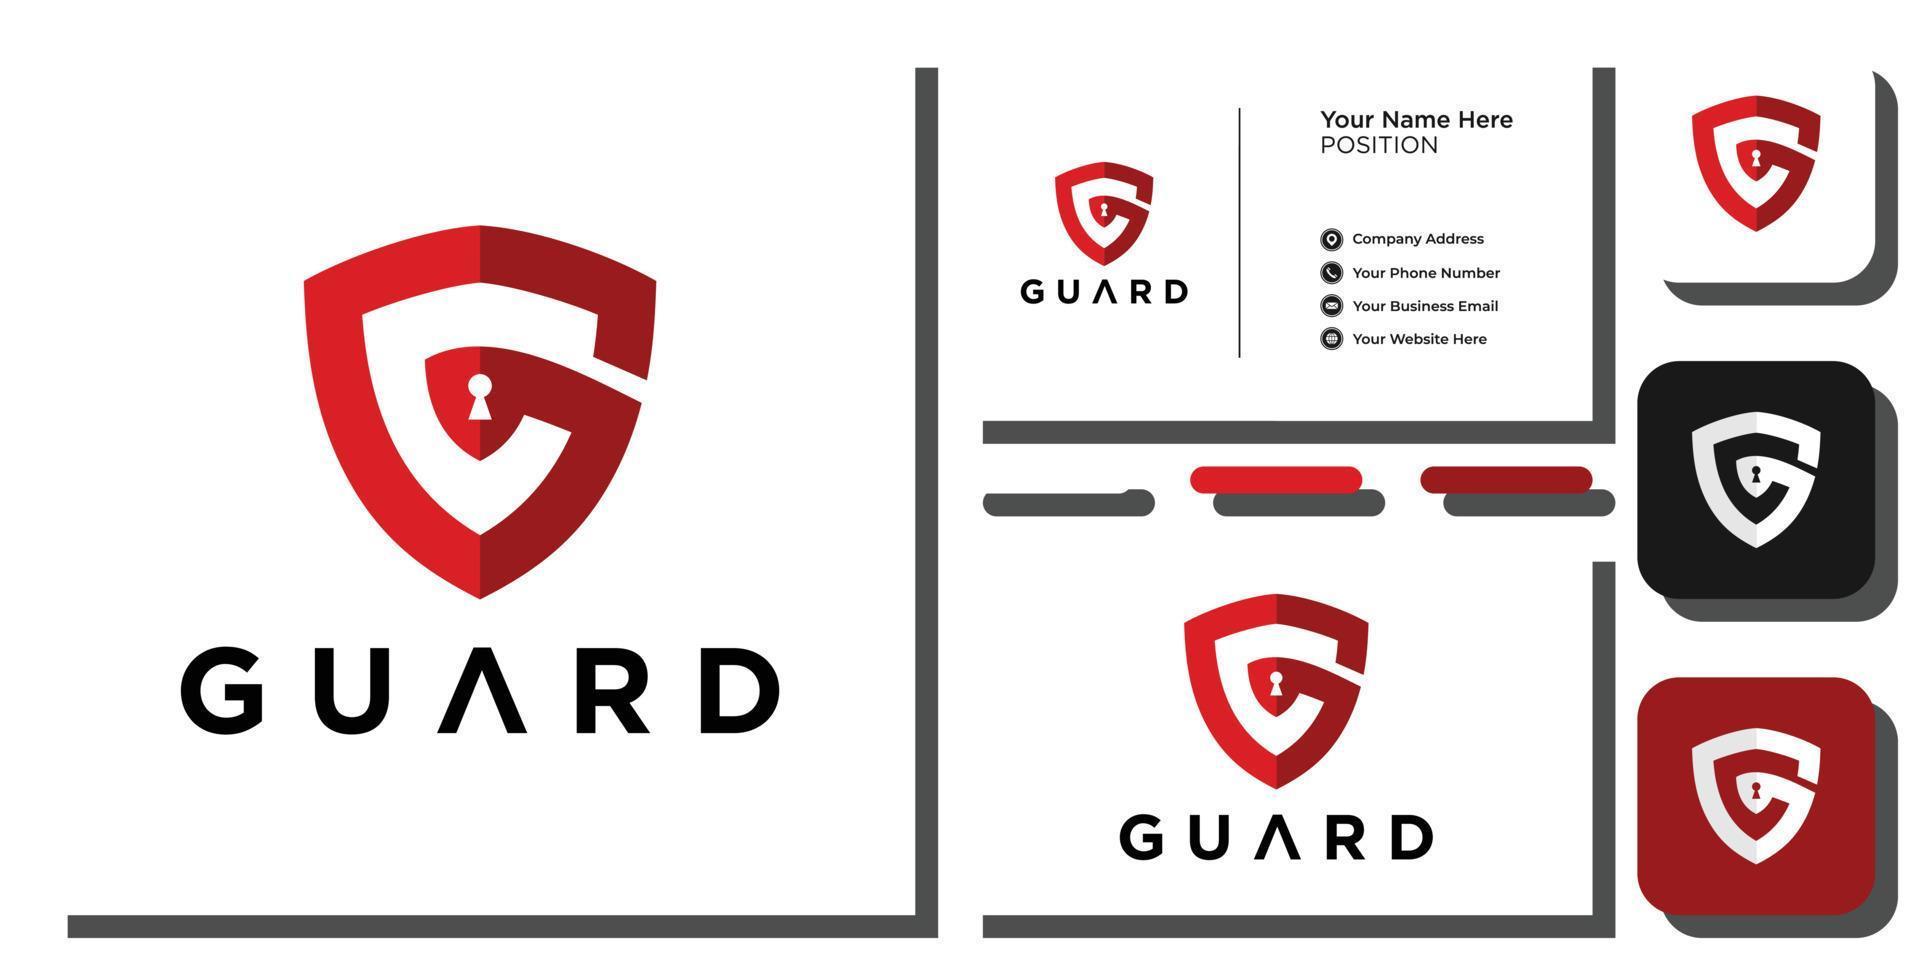 guardia símbolo combinación letras abstractas capital escudo bloqueo rojo tecnología seguridad con plantilla de tarjeta de visita vector